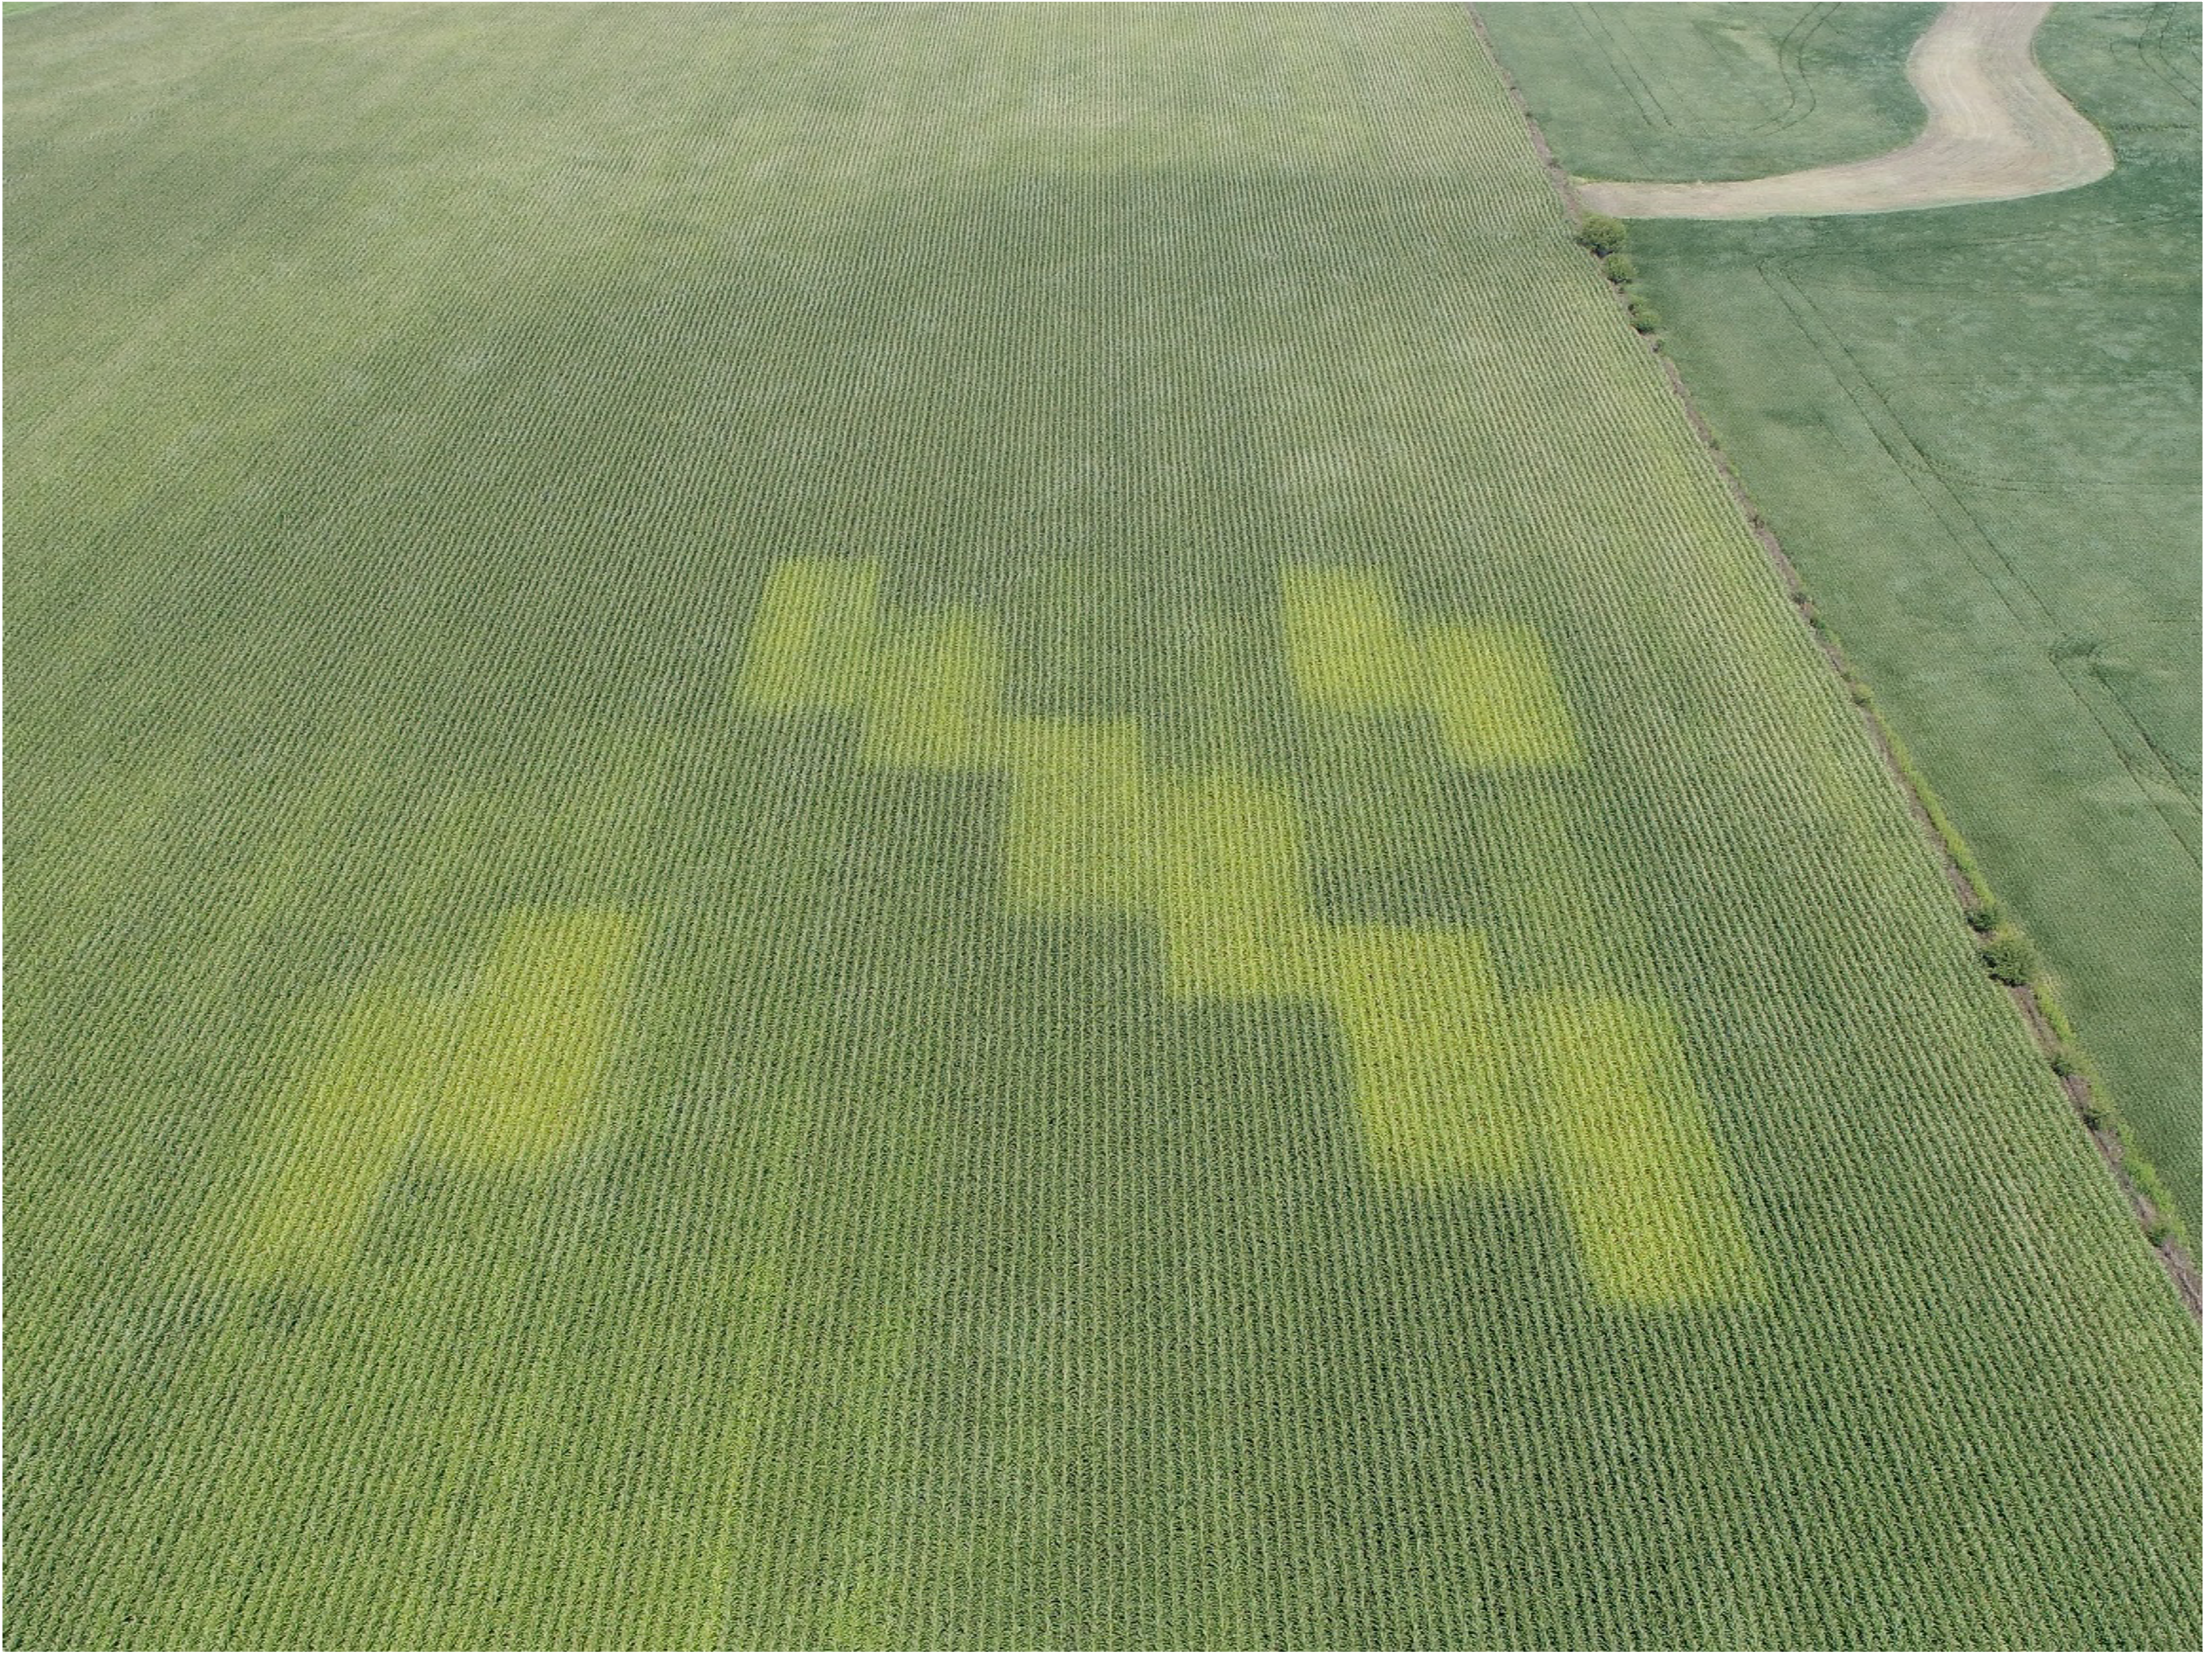 Aerial view of nitrogen test plots in a field